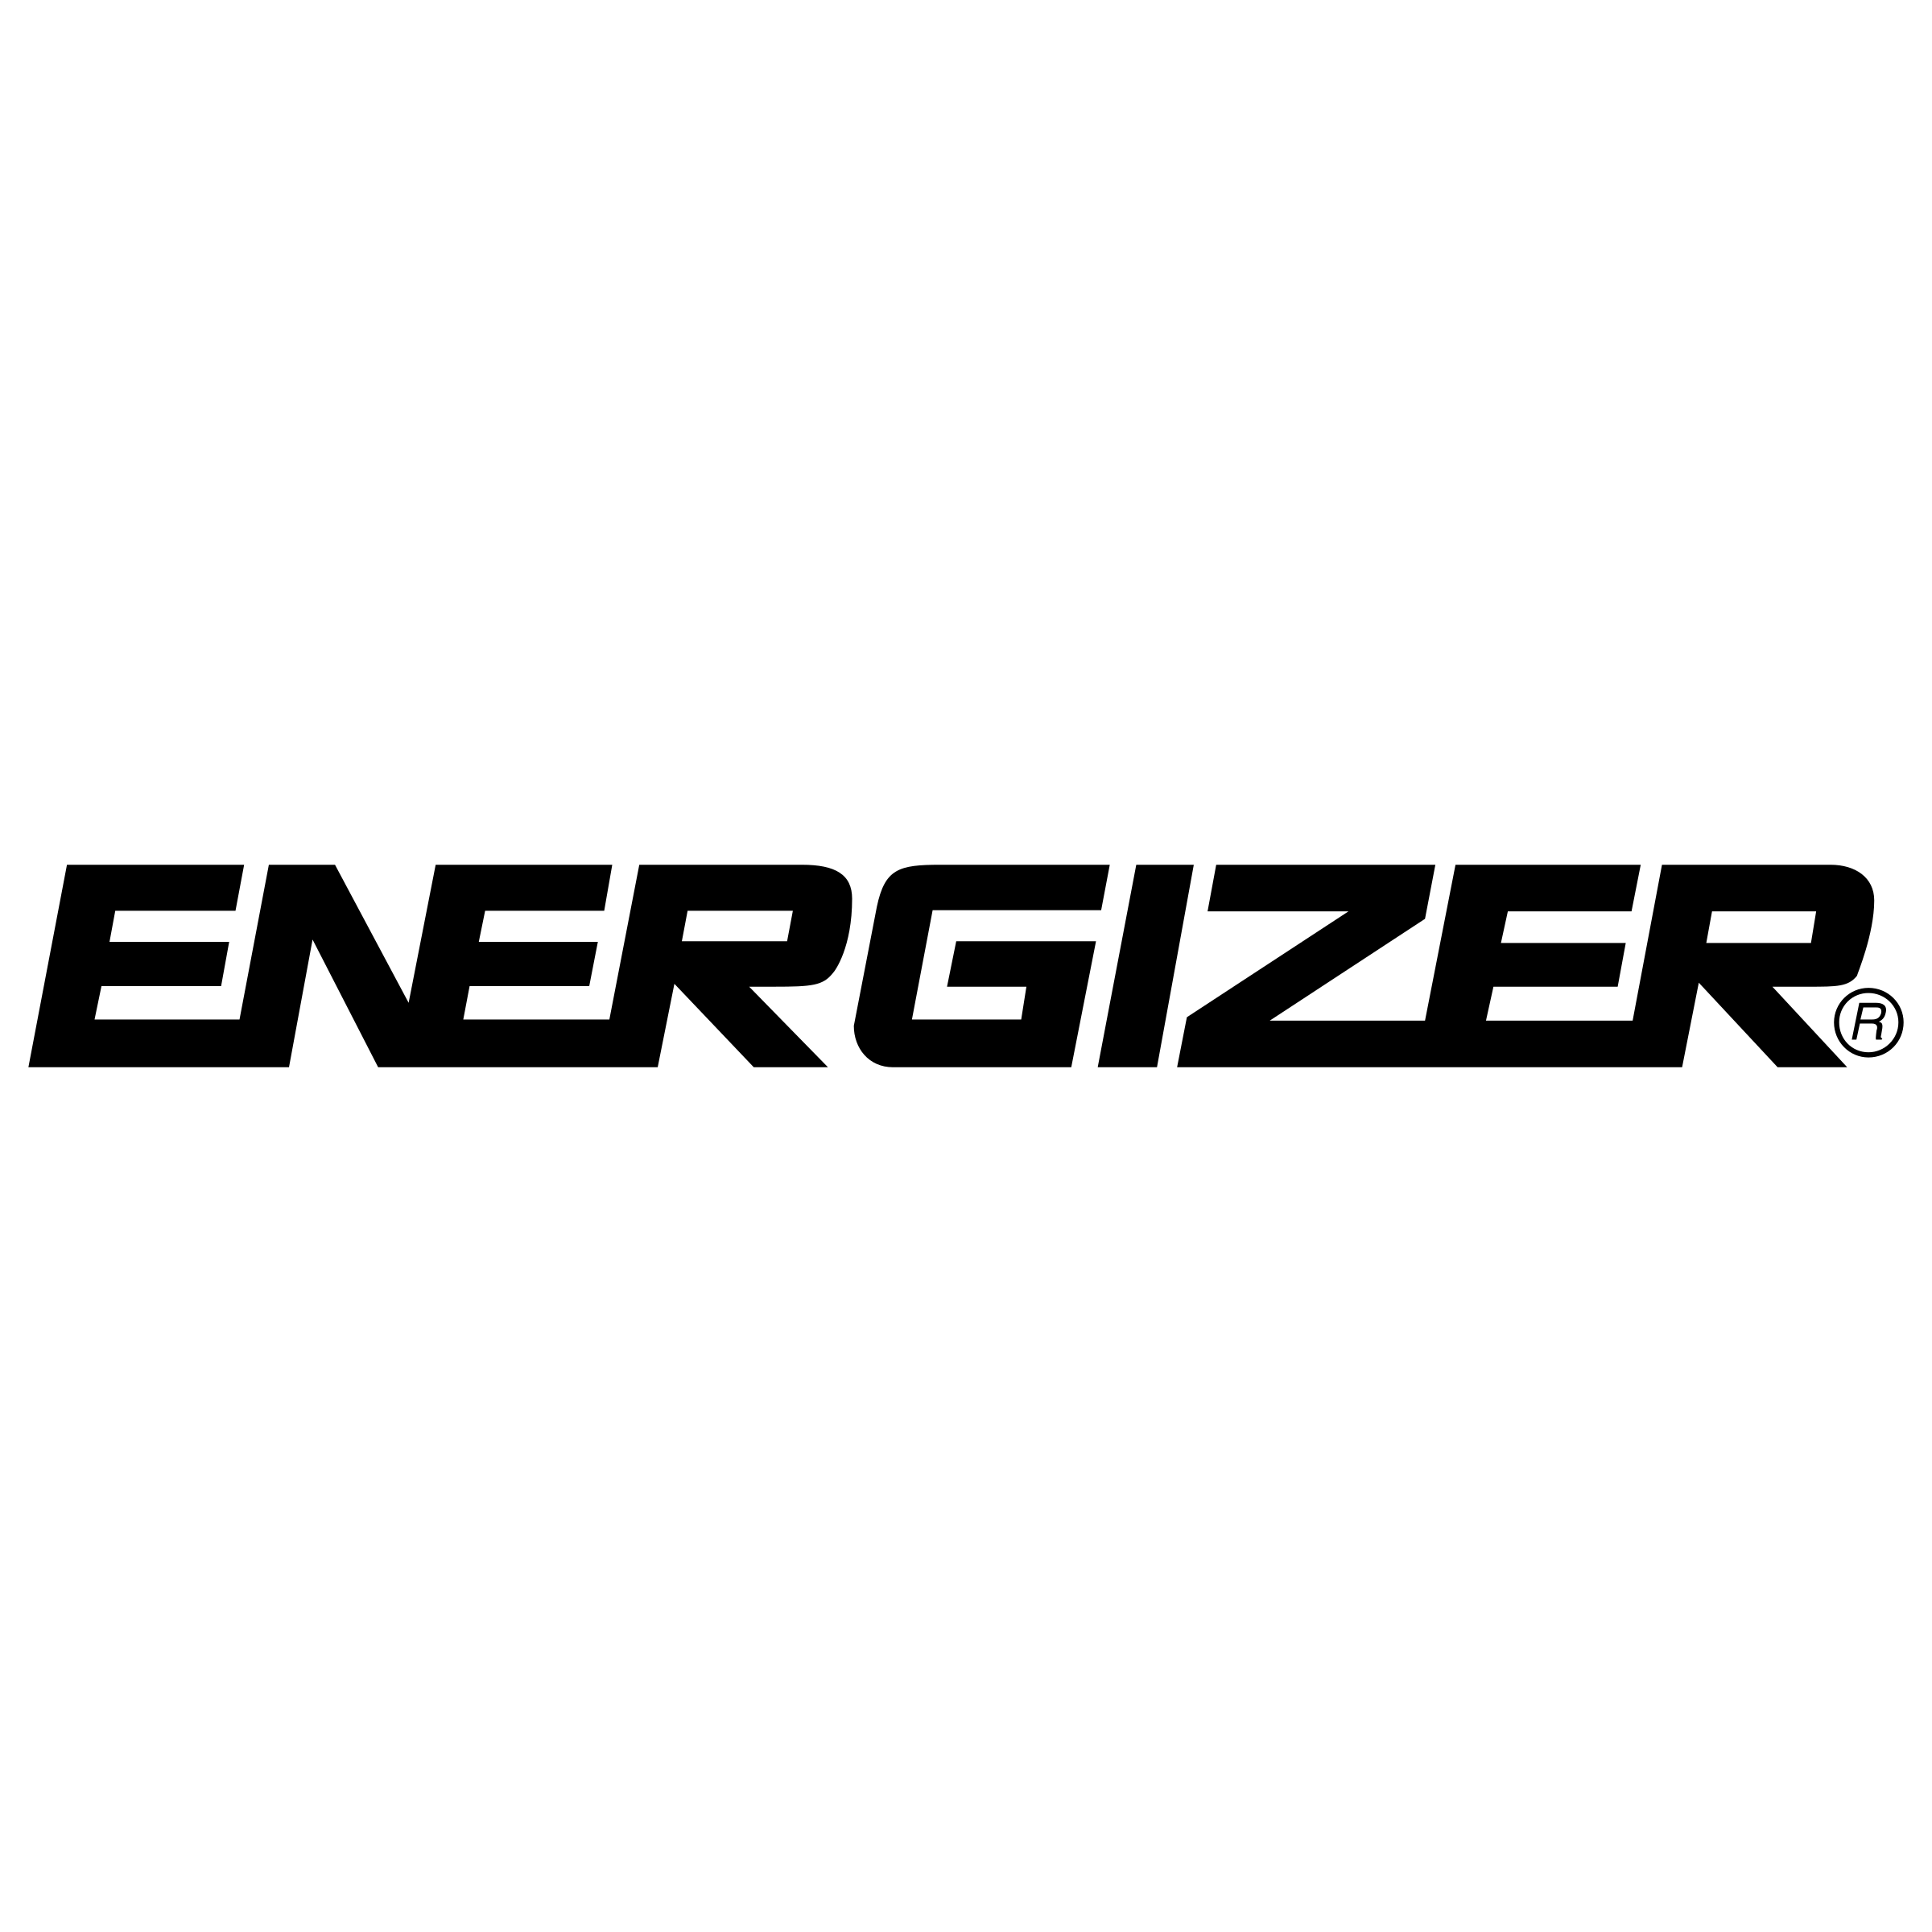 Energizer Logo - Energizer Logo PNG Transparent & SVG Vector - Freebie Supply